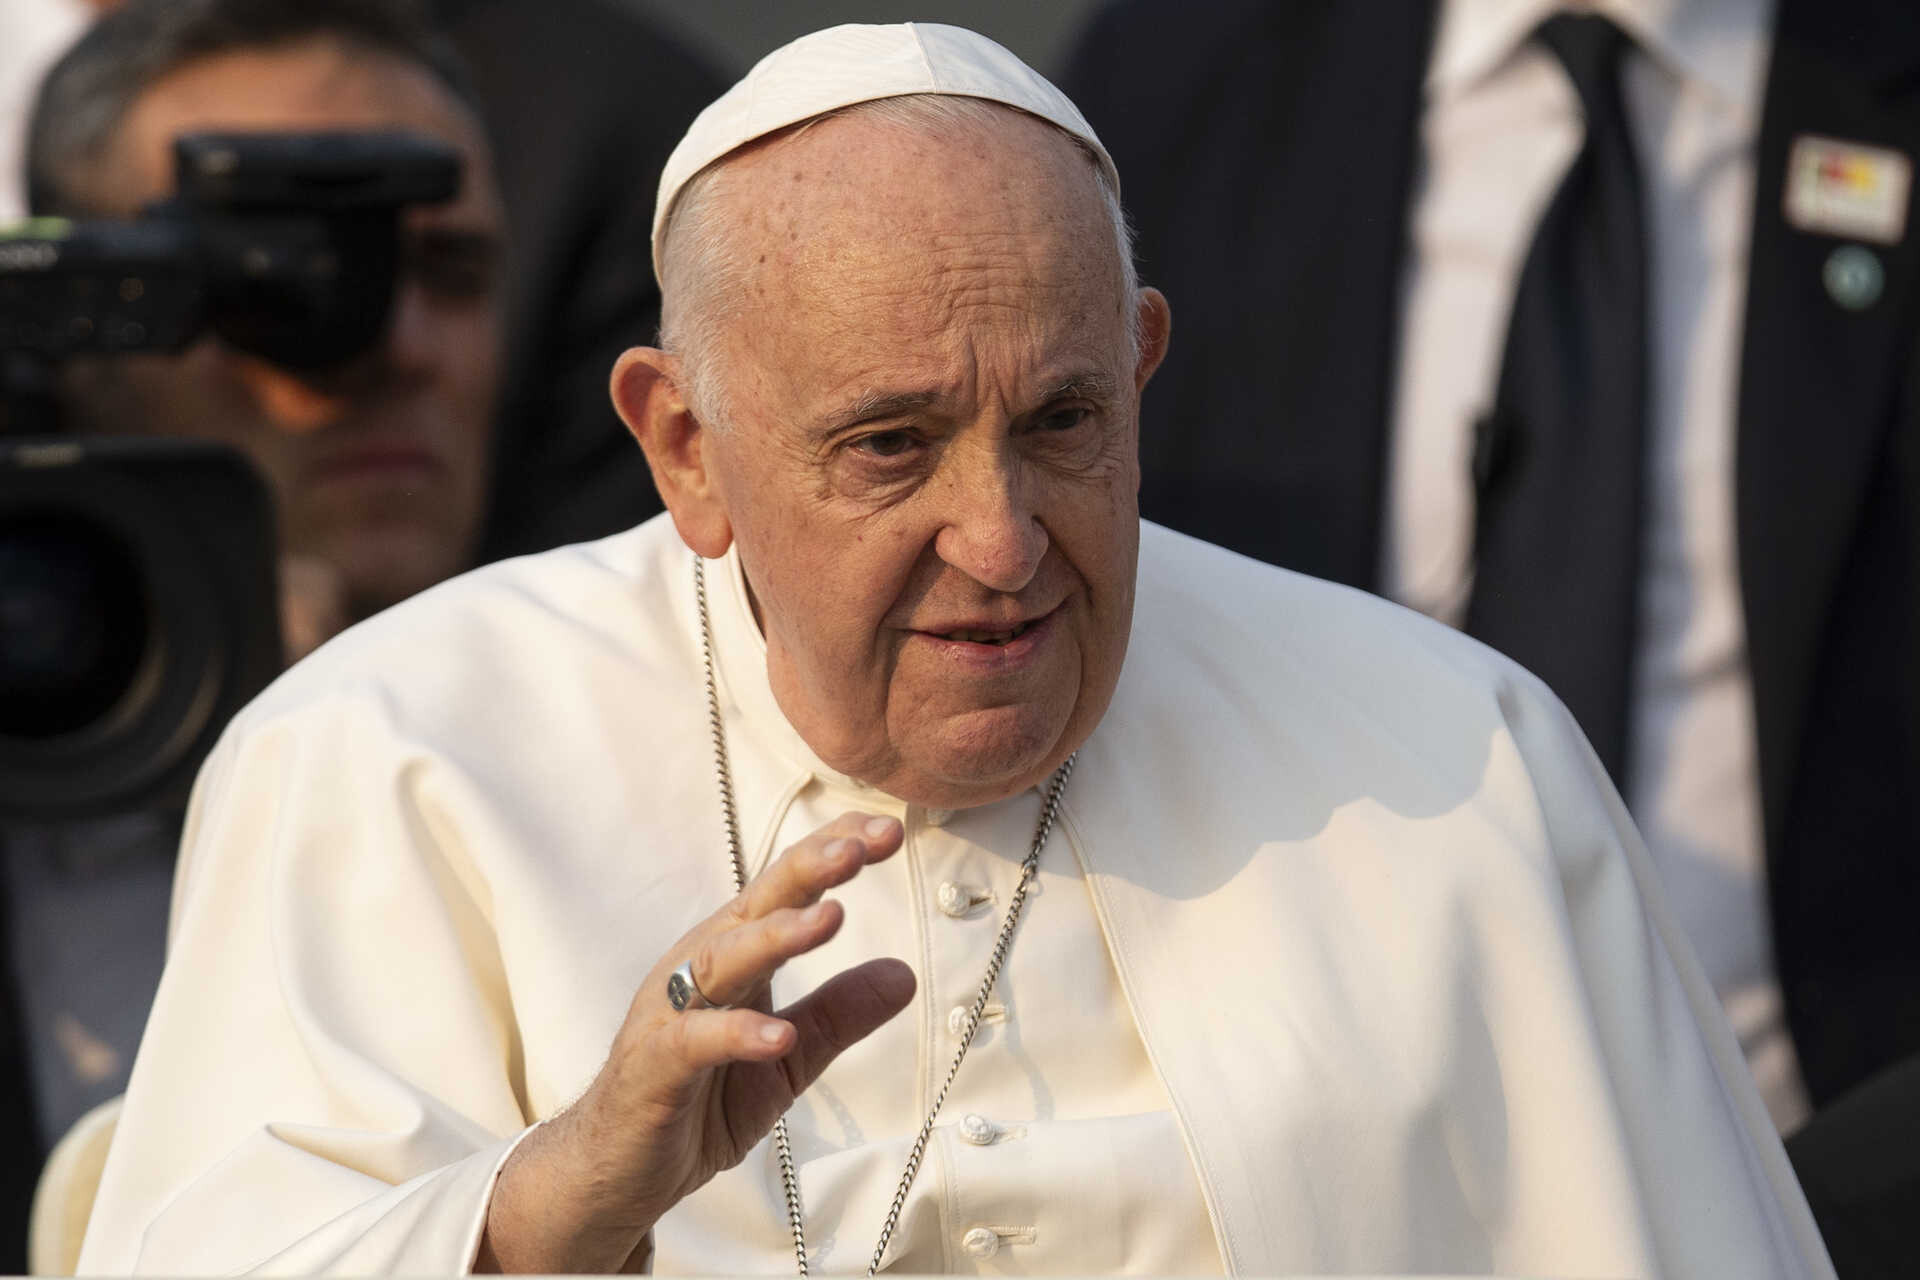 El Papa toma una decisión poco común y despide al obispo que lo criticó